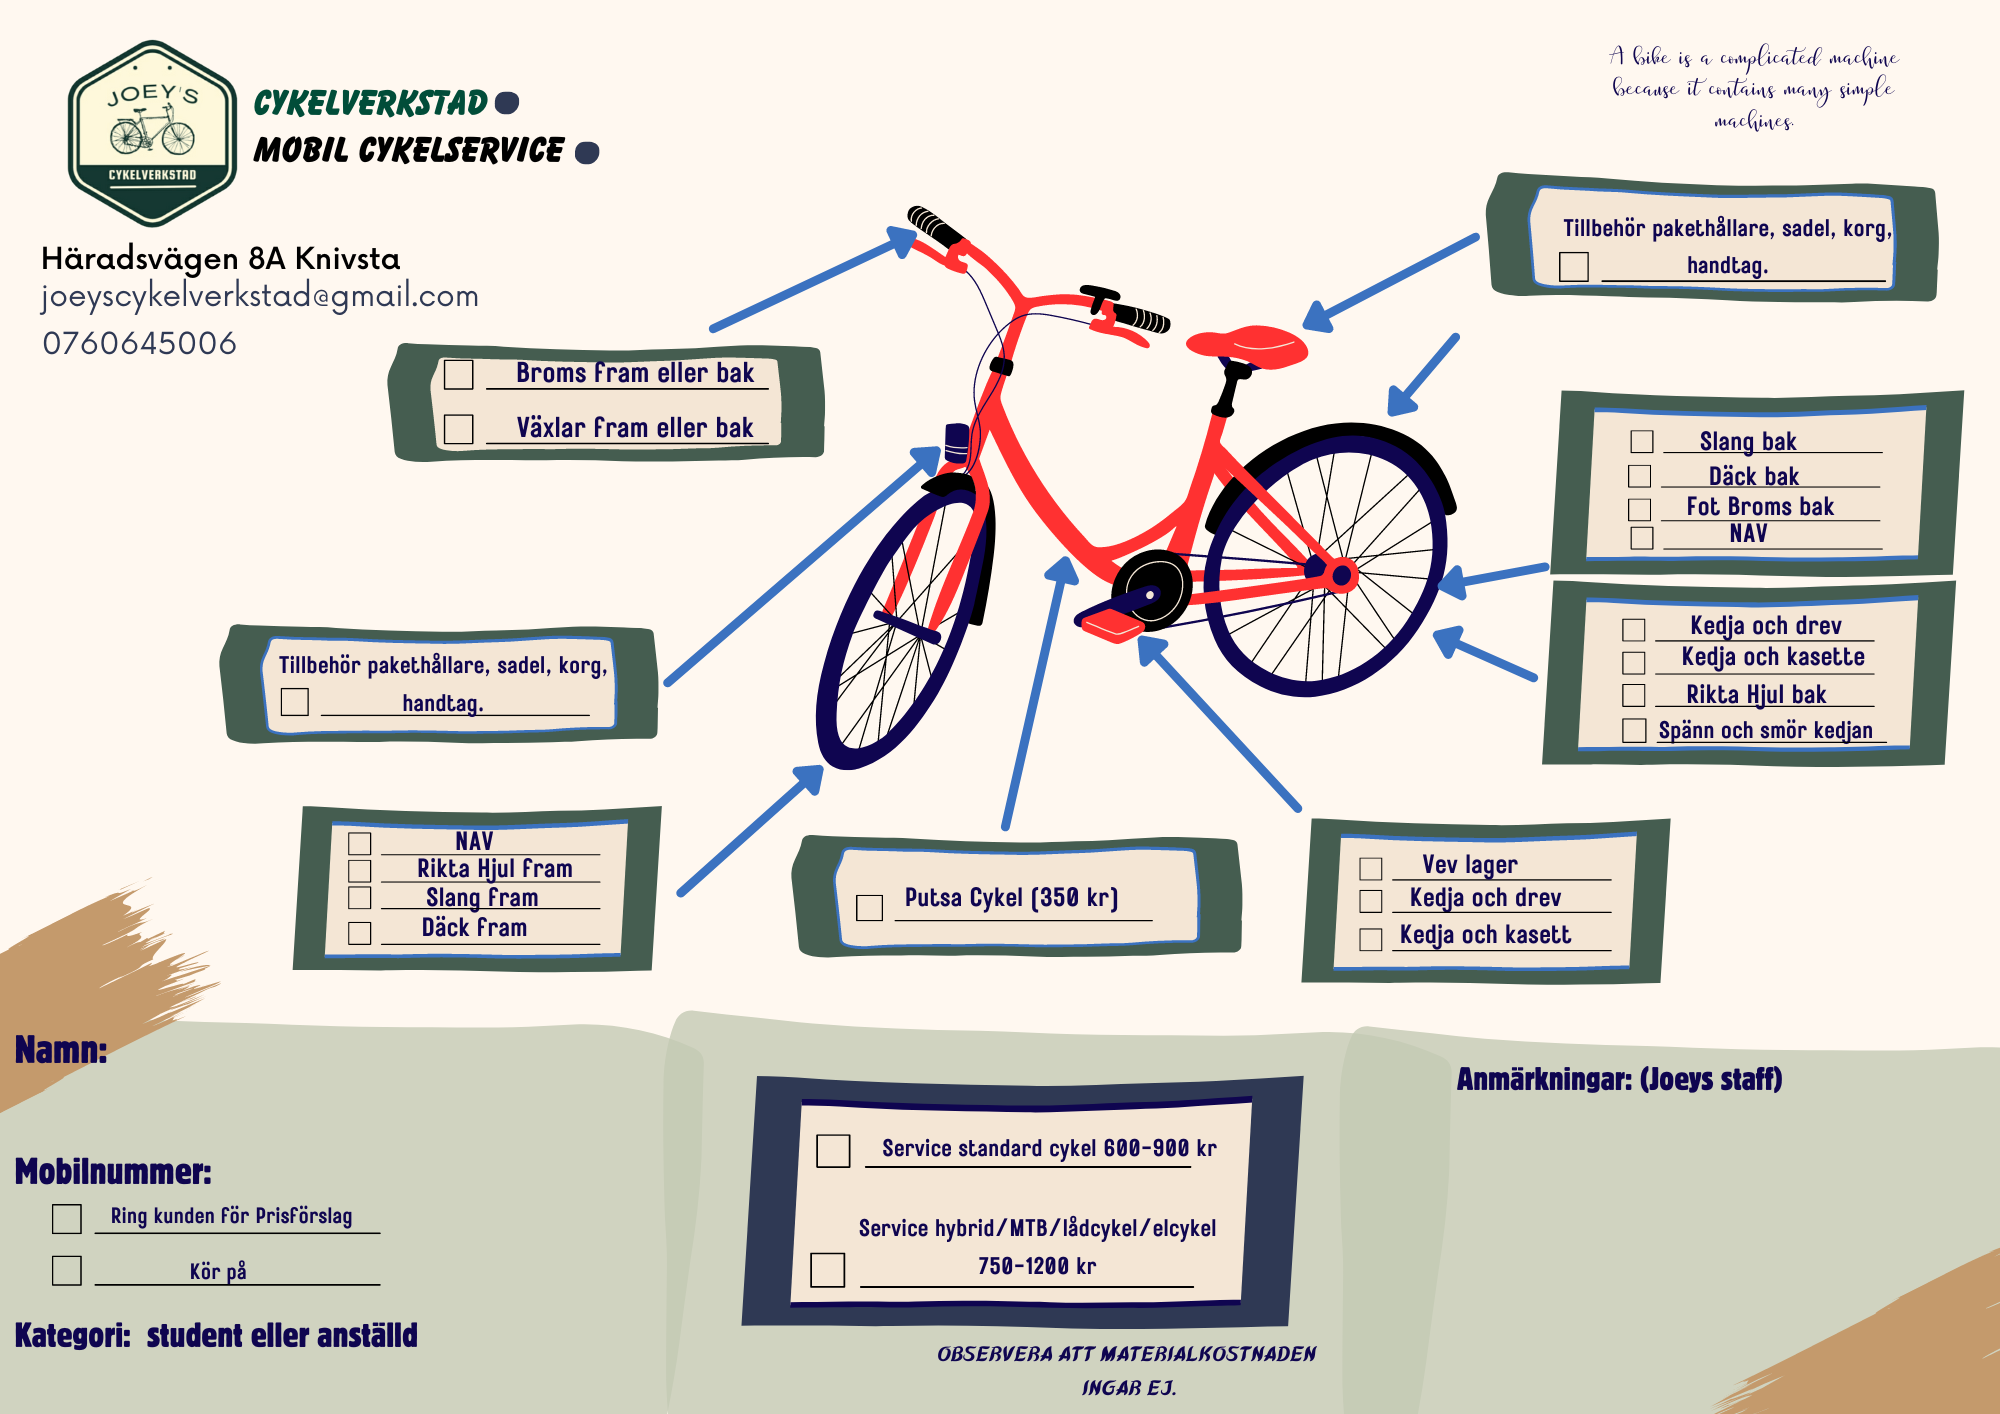 En bild av en cykel som visar de olika tjänster som cykelverkstad kan innehålla med information av leverantören